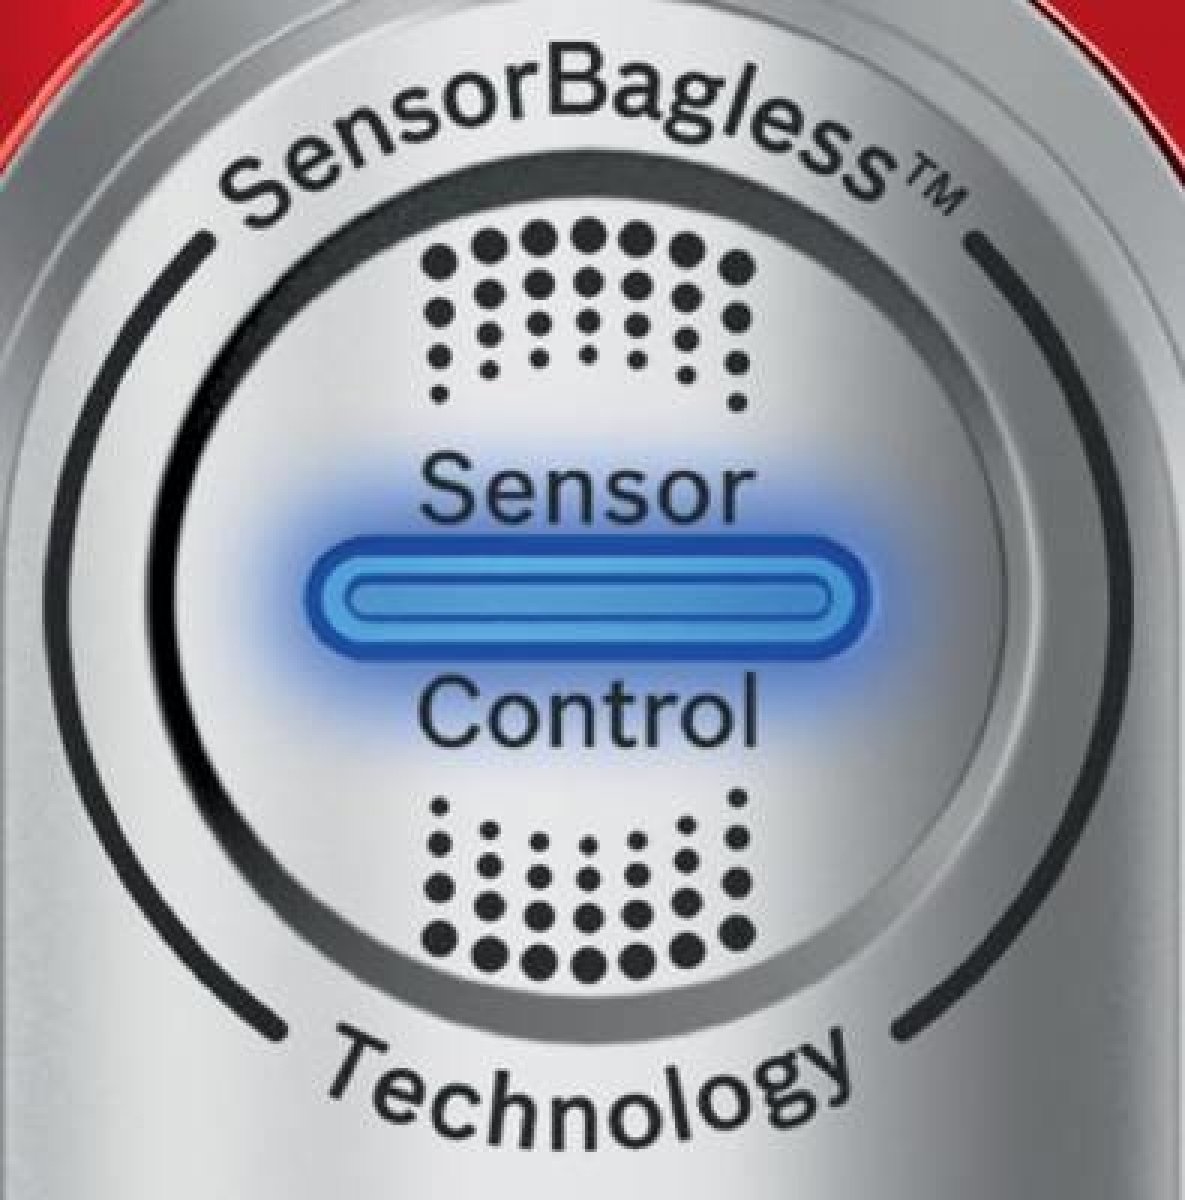 SmartSensor Control